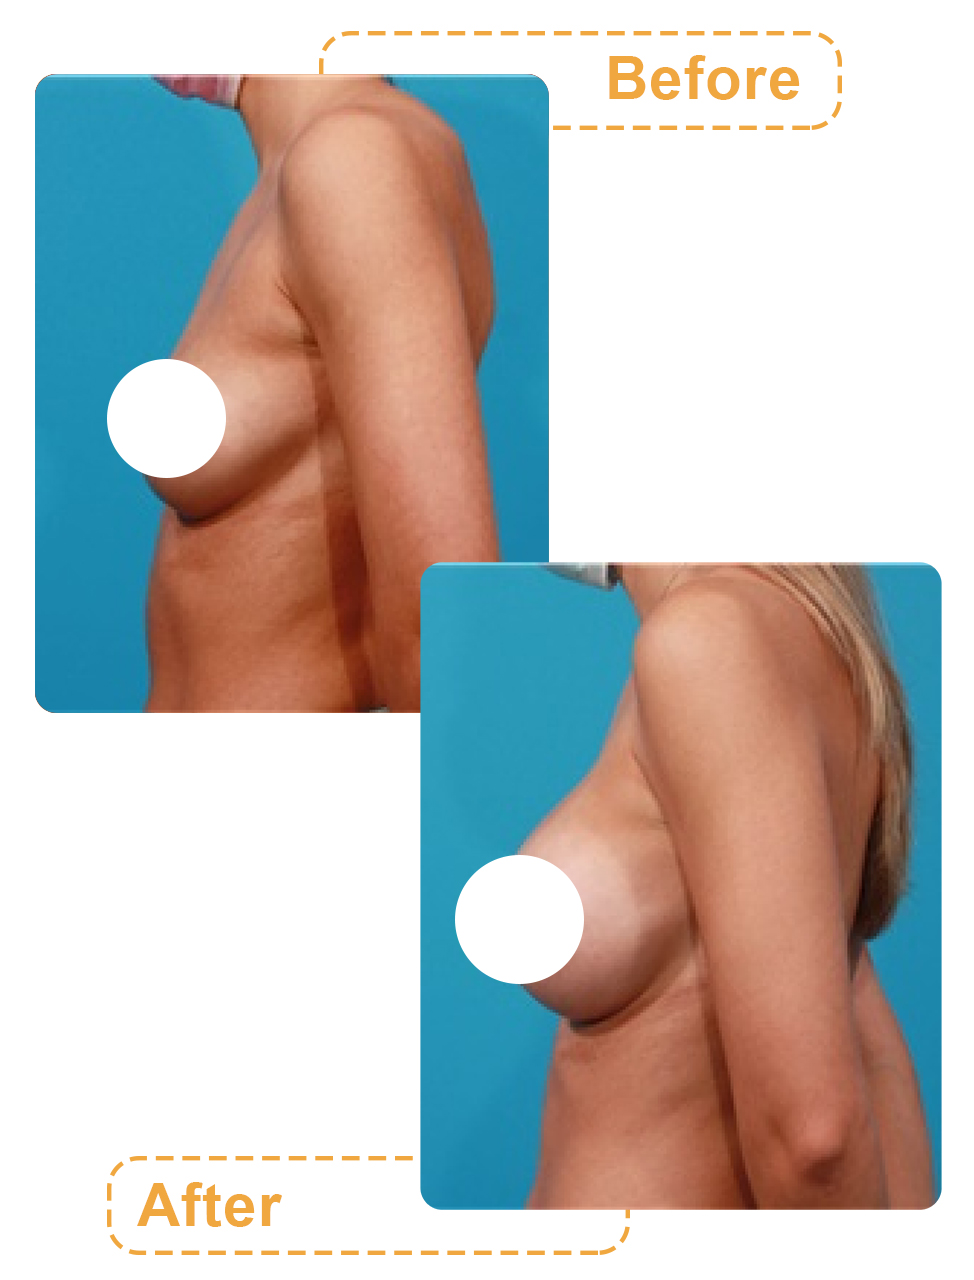 تصویر قبل و بعد بزرگ کردن سینه با عمل